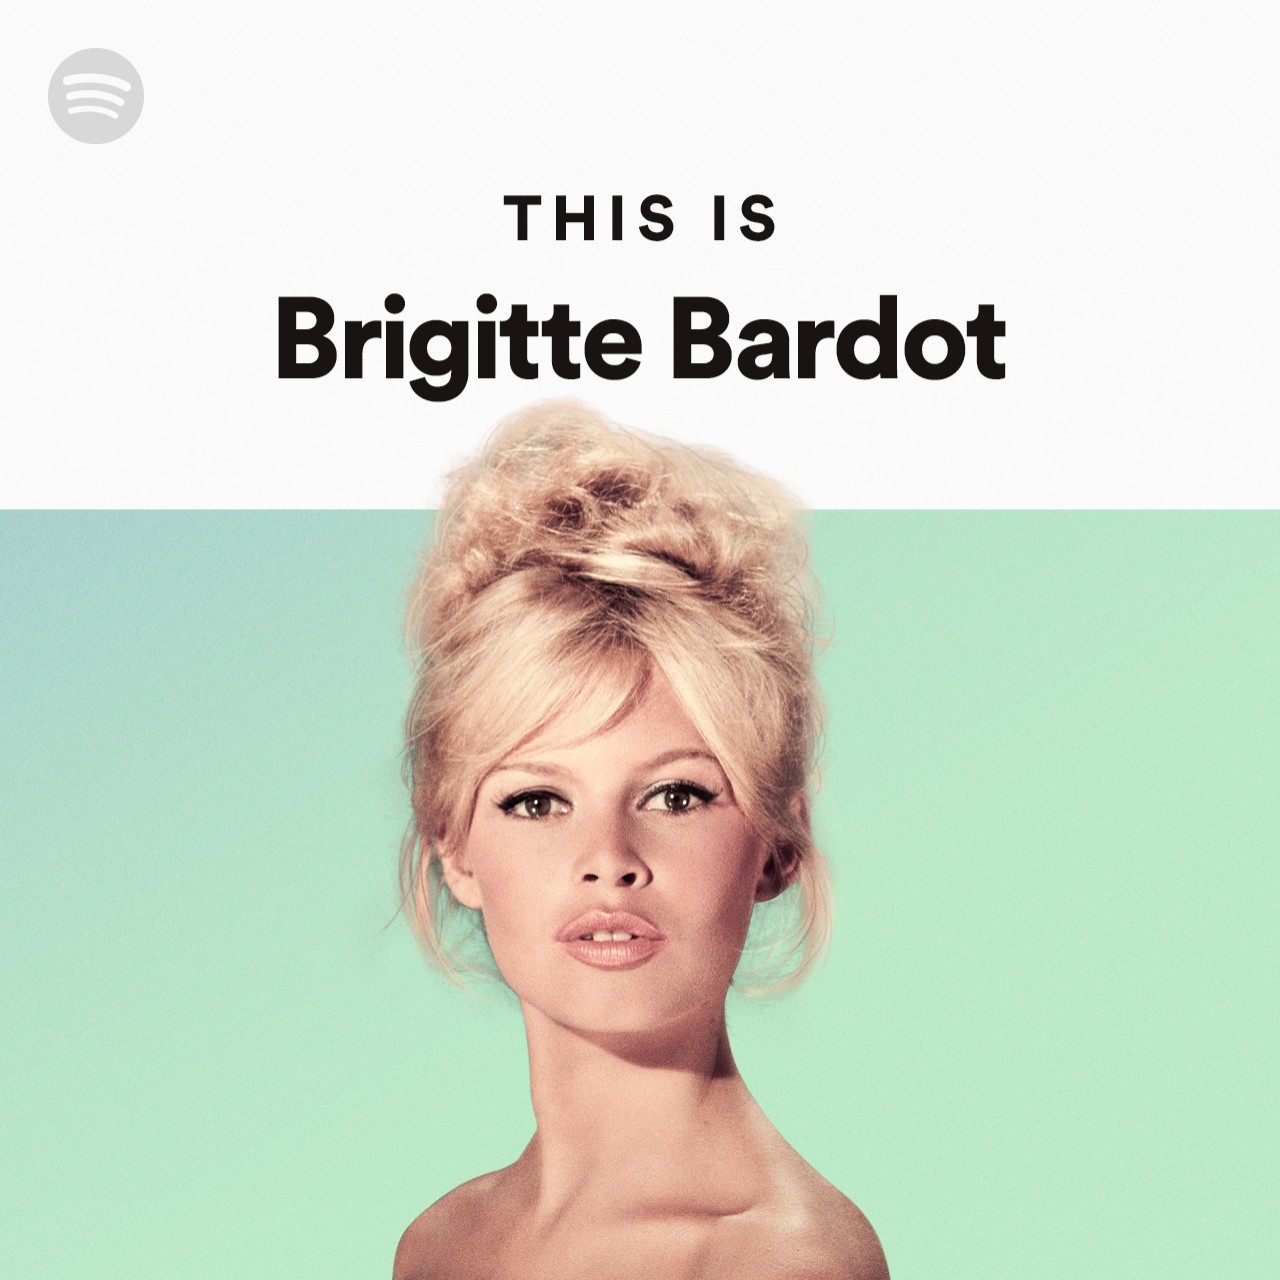 This Is Brigitte Bardot